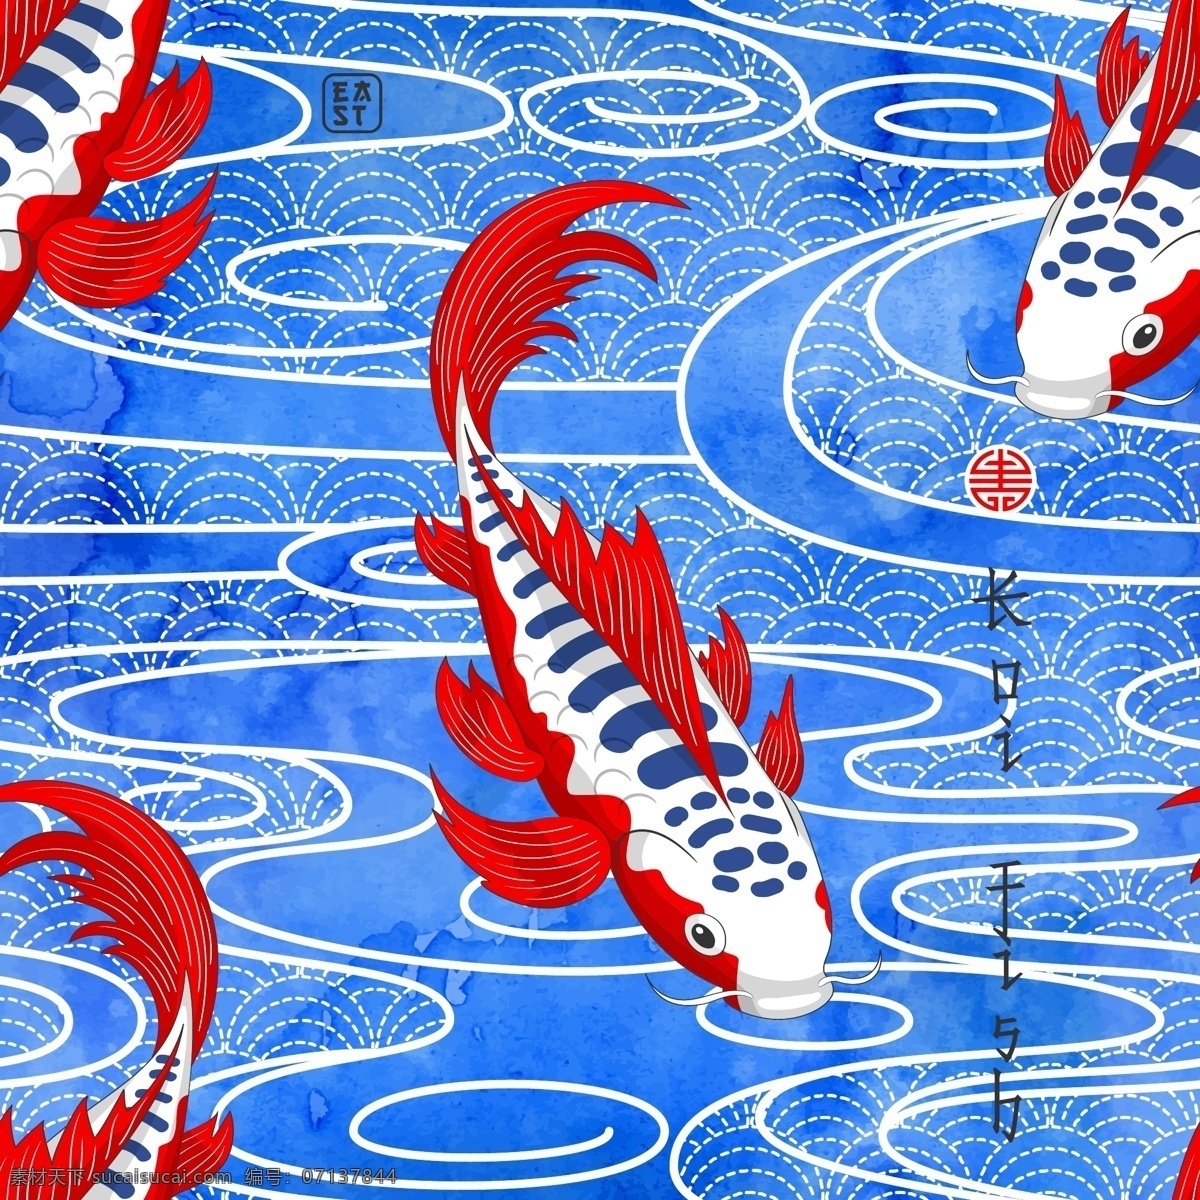 鱼儿 矢量图 大牌图案 抽象图案 动物 中国风 精美 面料 图案 花型 底纹边框 背景底纹